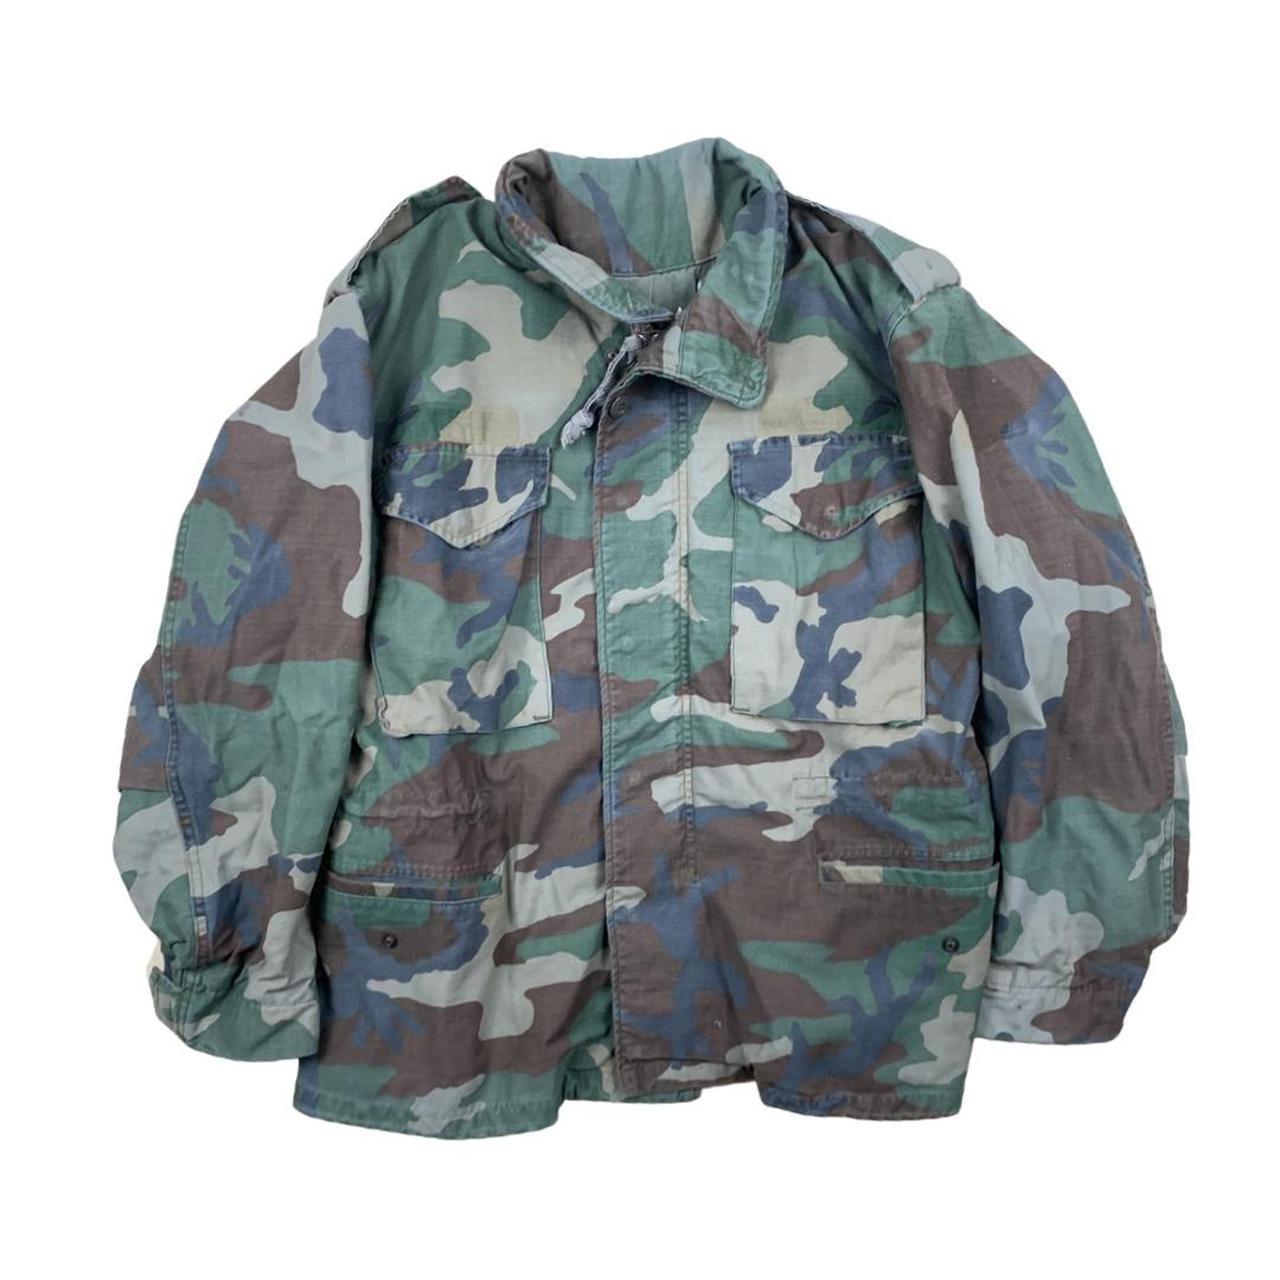 Vintage army Camo heavyweight coat jacket. Solid... - Depop